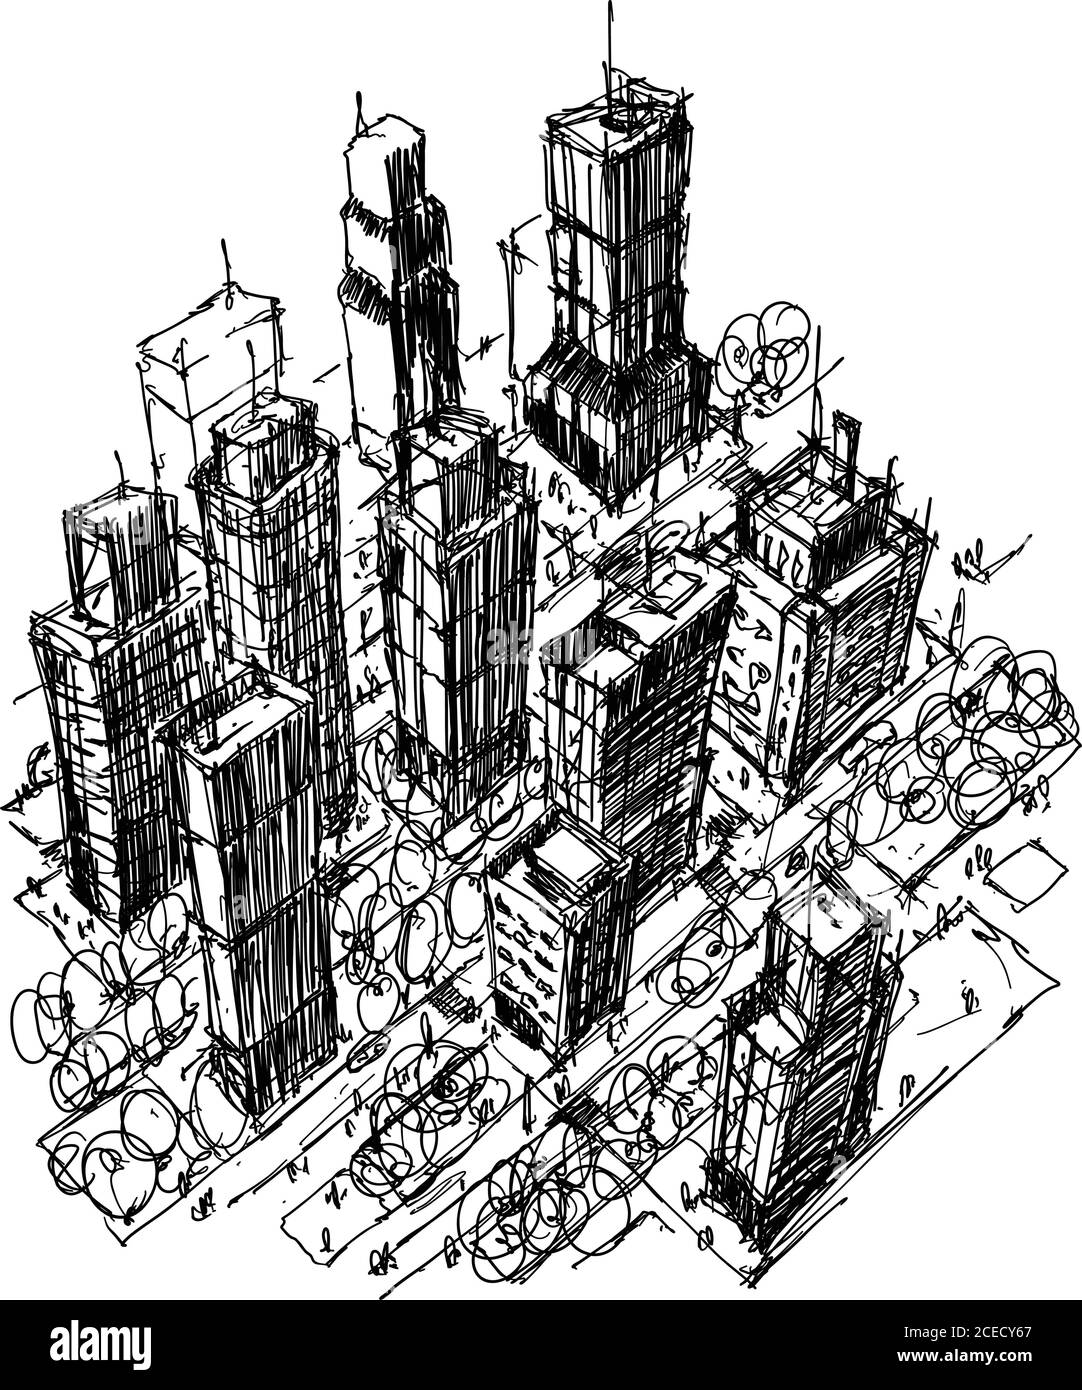 Croquis d'architecture dessiné à la main d'une ville moderne avec des immeubles et dans les rues Illustration de Vecteur